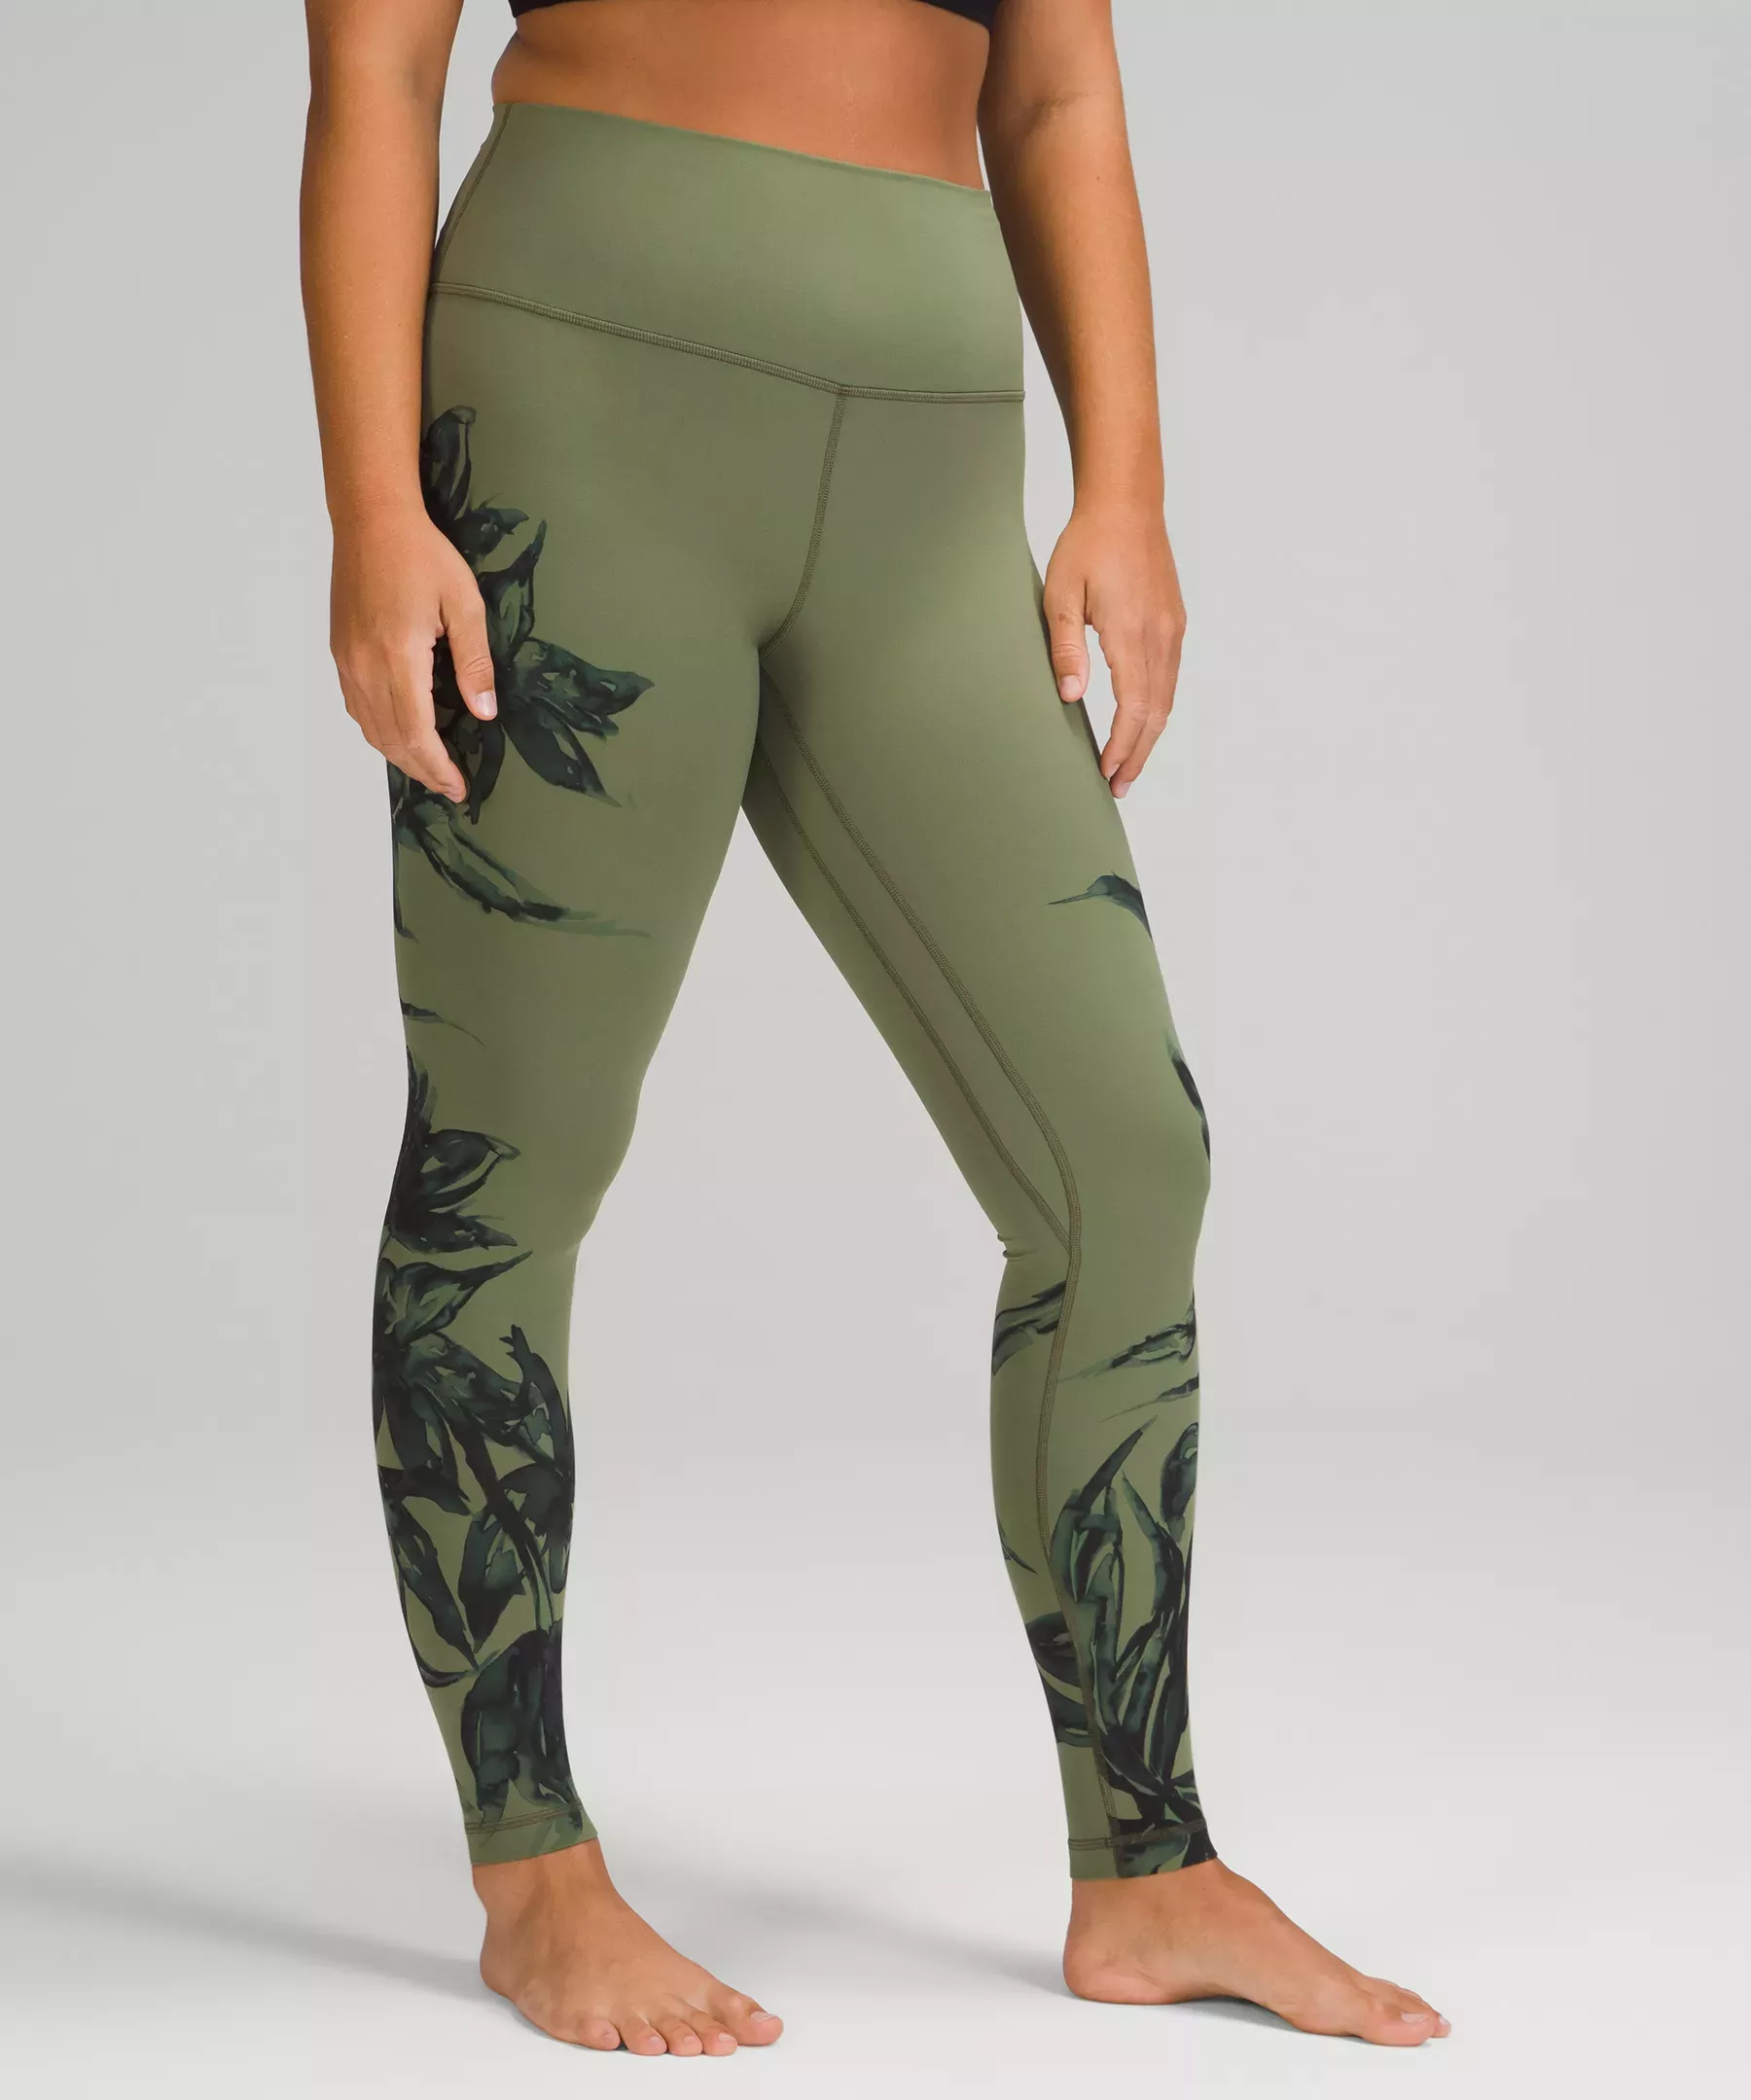 Lululemon align high rise green camo leggings